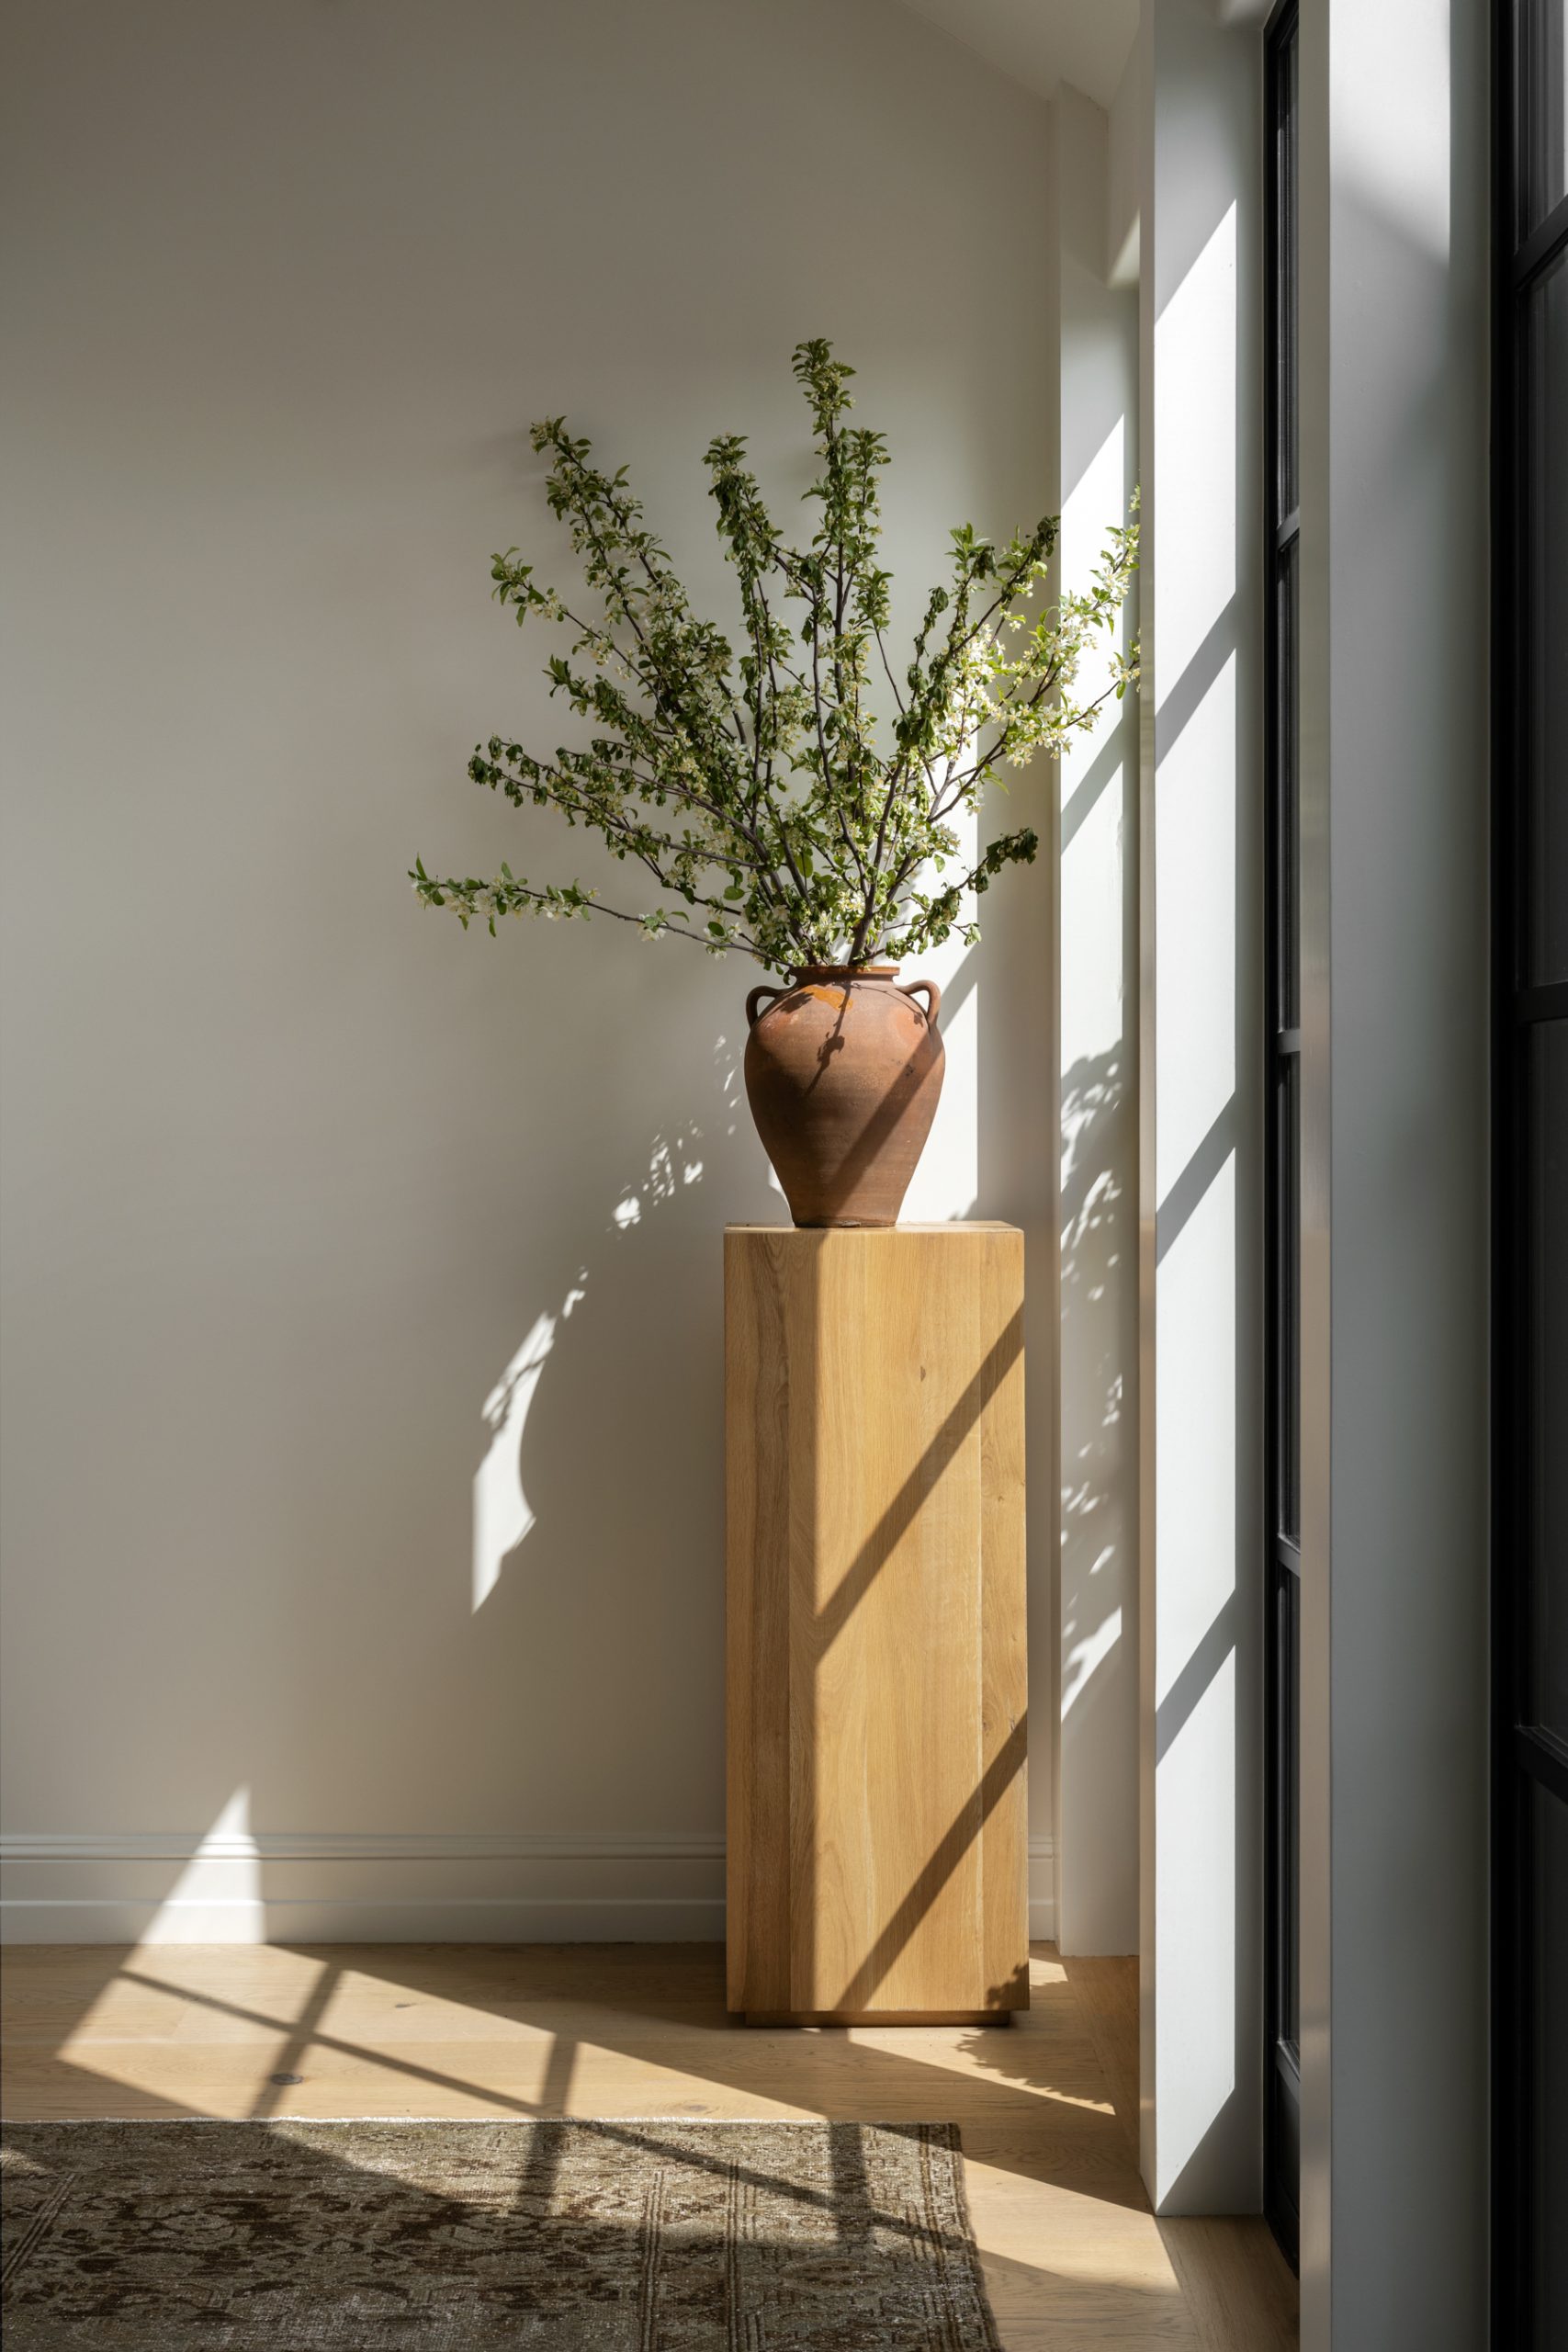 Pedestal in hallway of windows